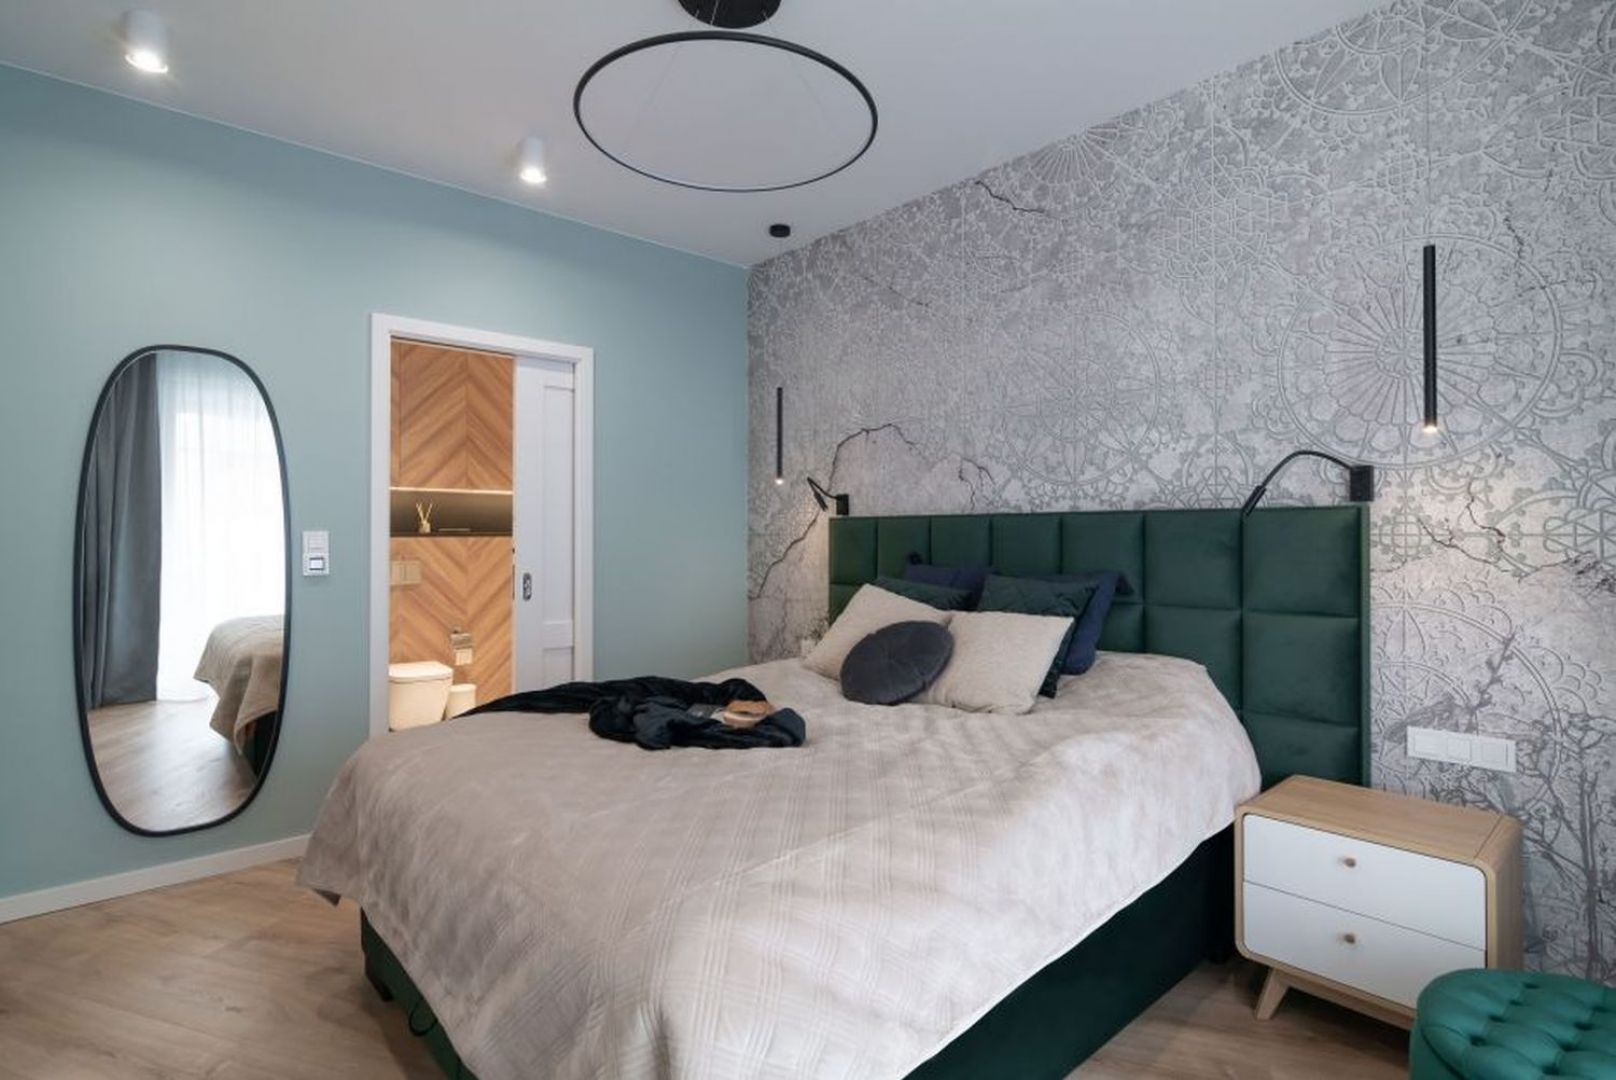 Ściana za łóżkiem w sypialni wykończona jest delikatną tapetą połyskiem. Projekt i zdjęcie: KODO Projekty i Realizacje Wnętrz